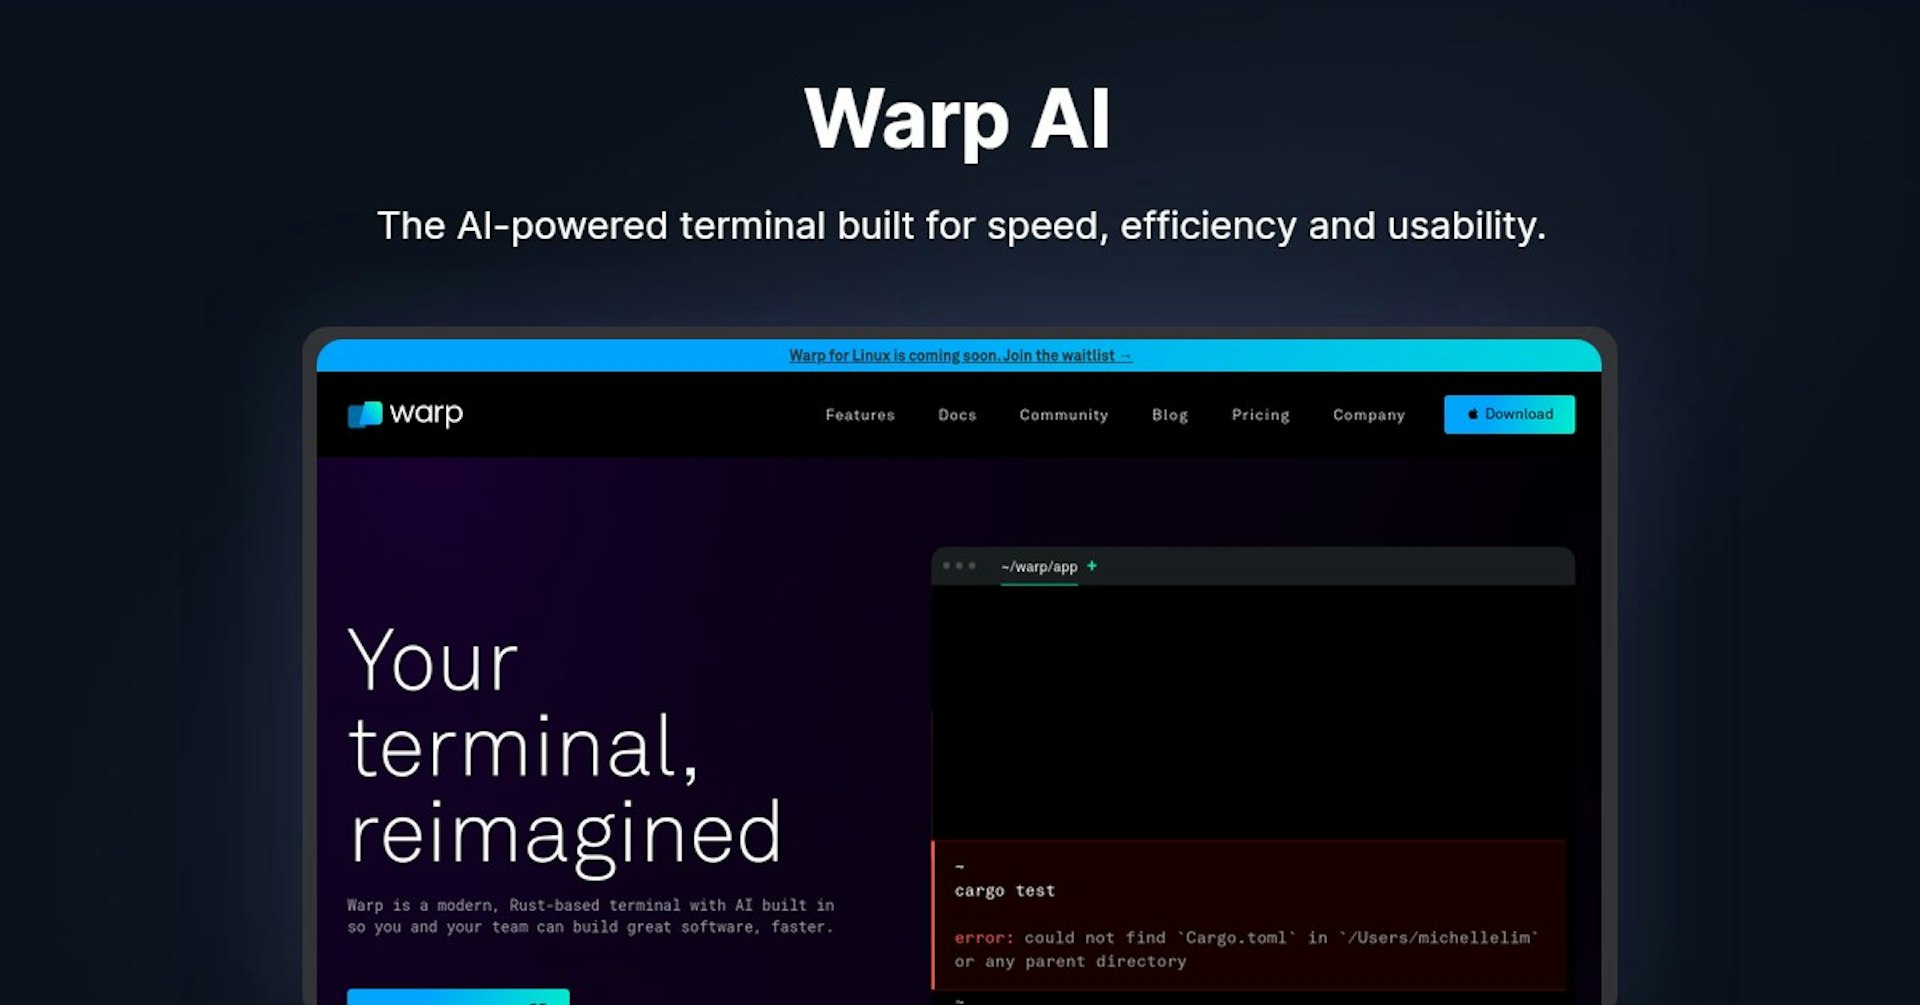 Warp AI